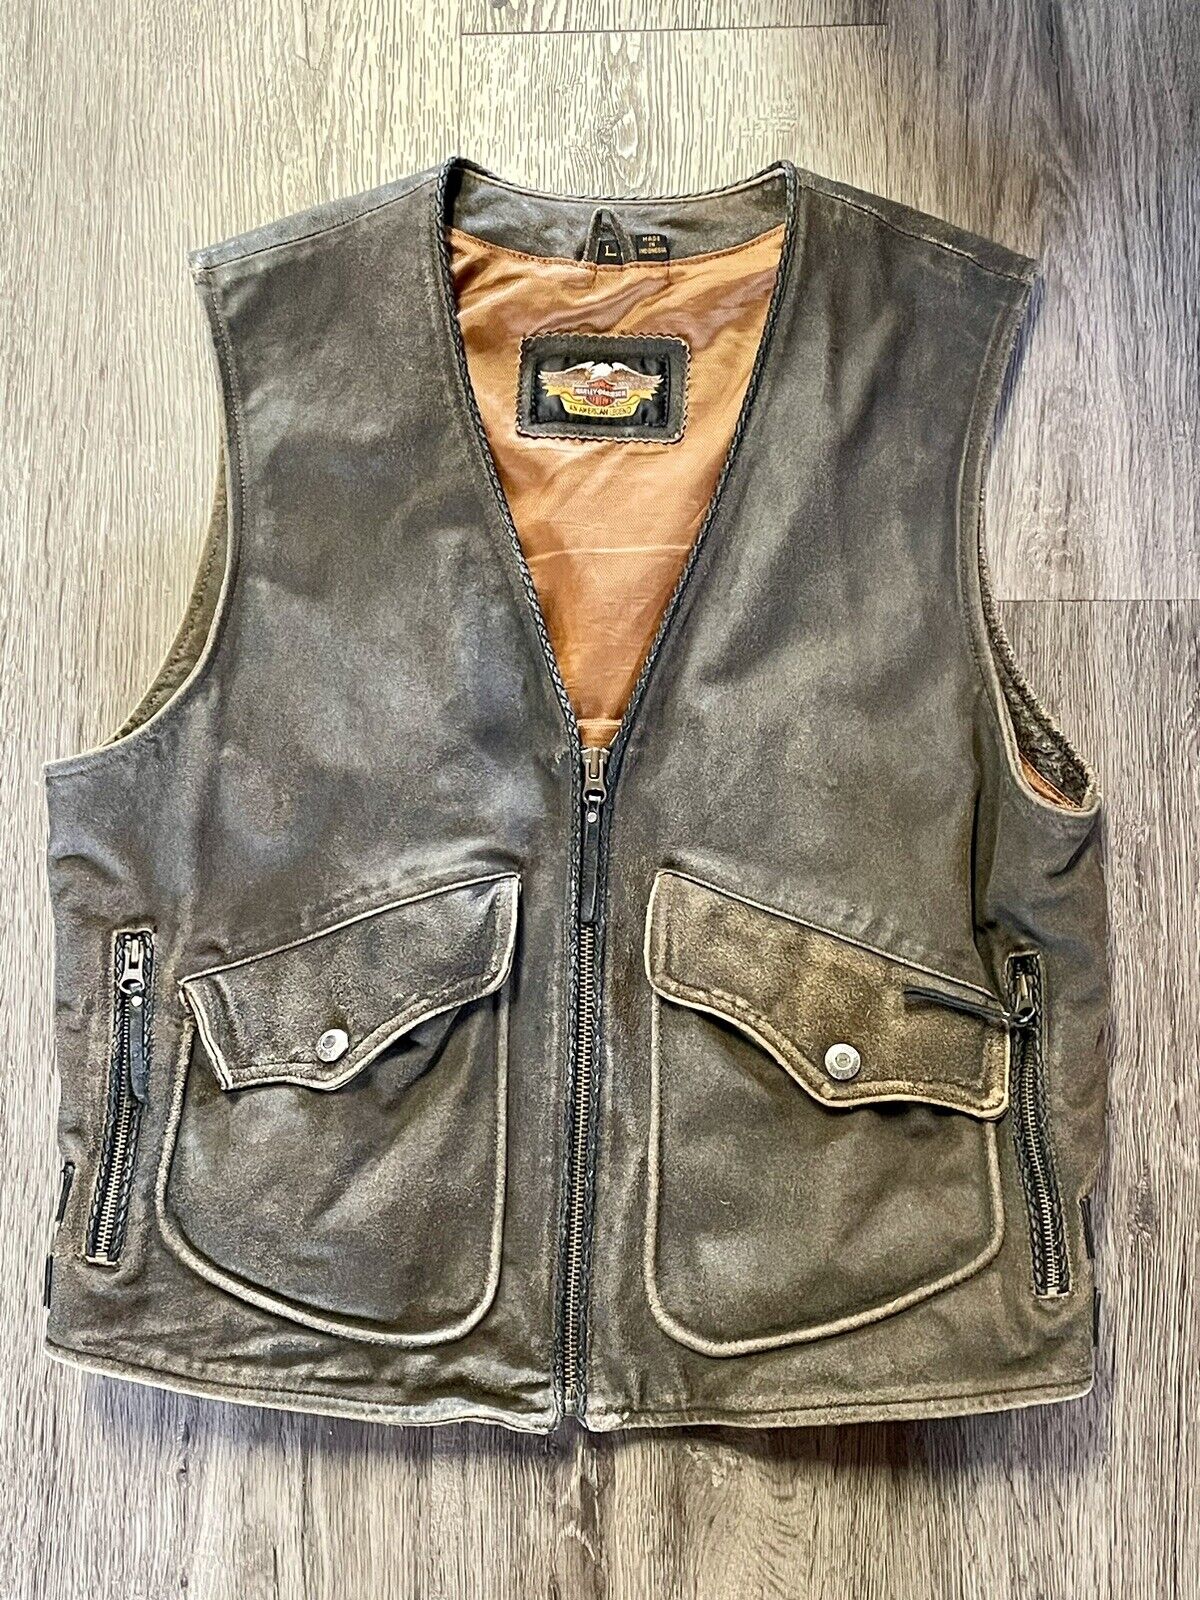 Harley Davidson Men’s BILLINGS Distressed Brown Leather Vest L Distressed VTG